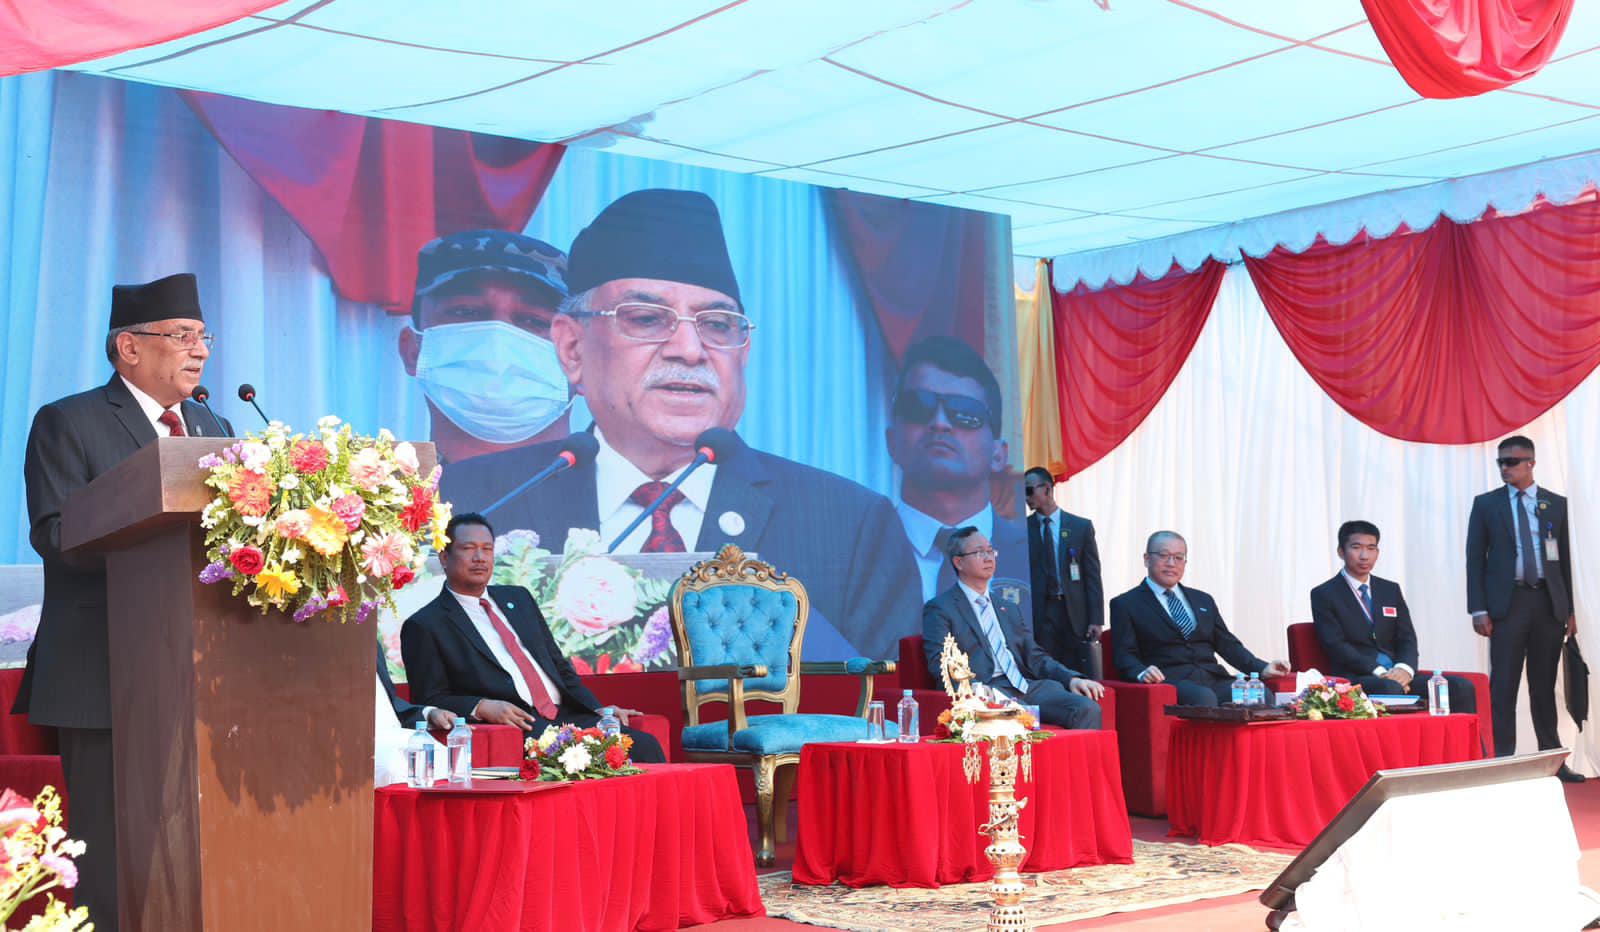 نیپال کے وزیر اعظم پرچنڈ نے کیوں کی کھل کر شی جن پنگ کی تعریف؟